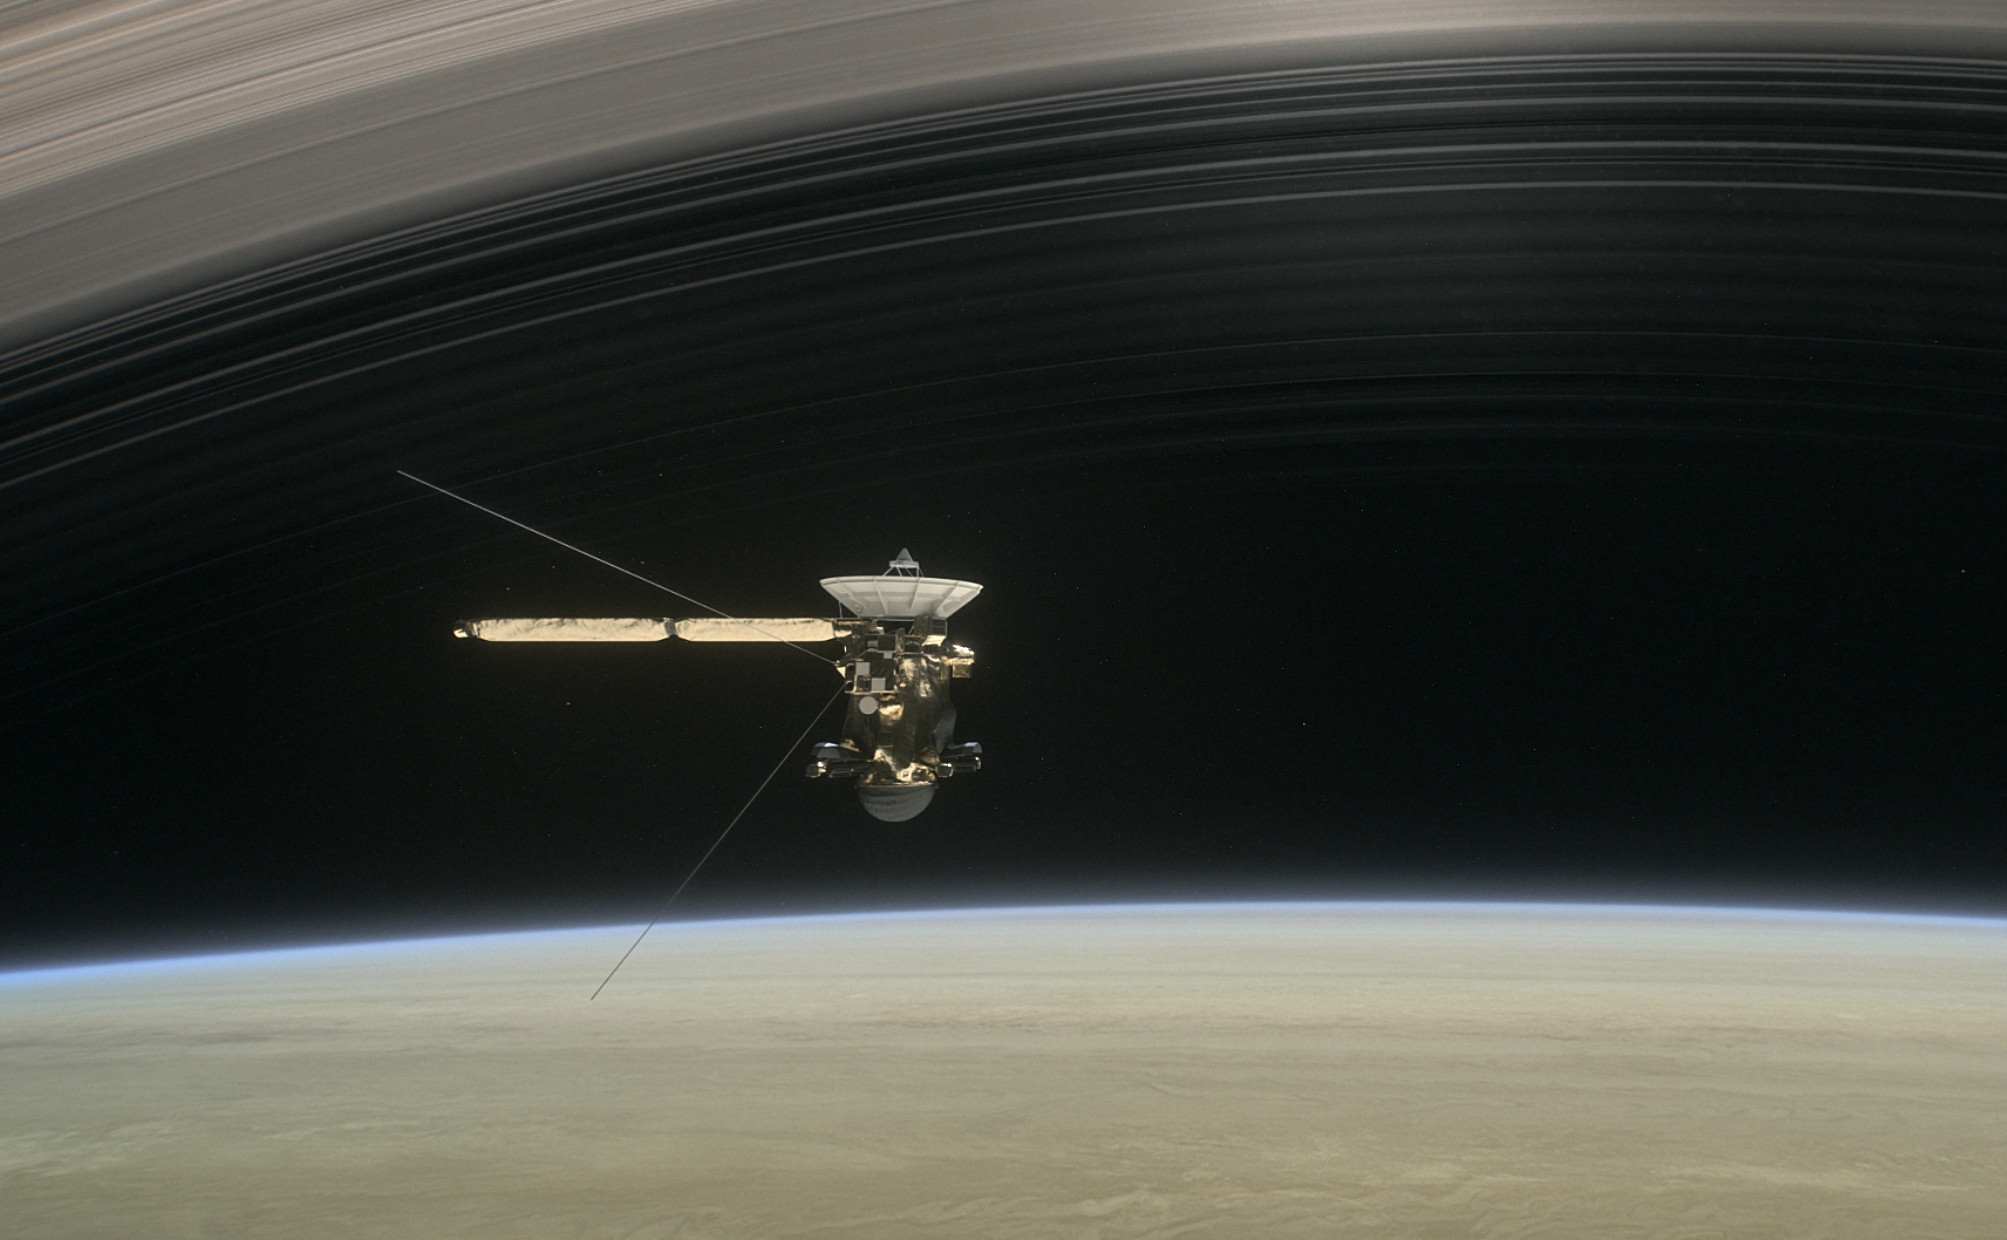 Космическая станция "Кассини" над поверхностью Сатурна. Фото: изображение&nbsp;NASA/JPL-Caltech